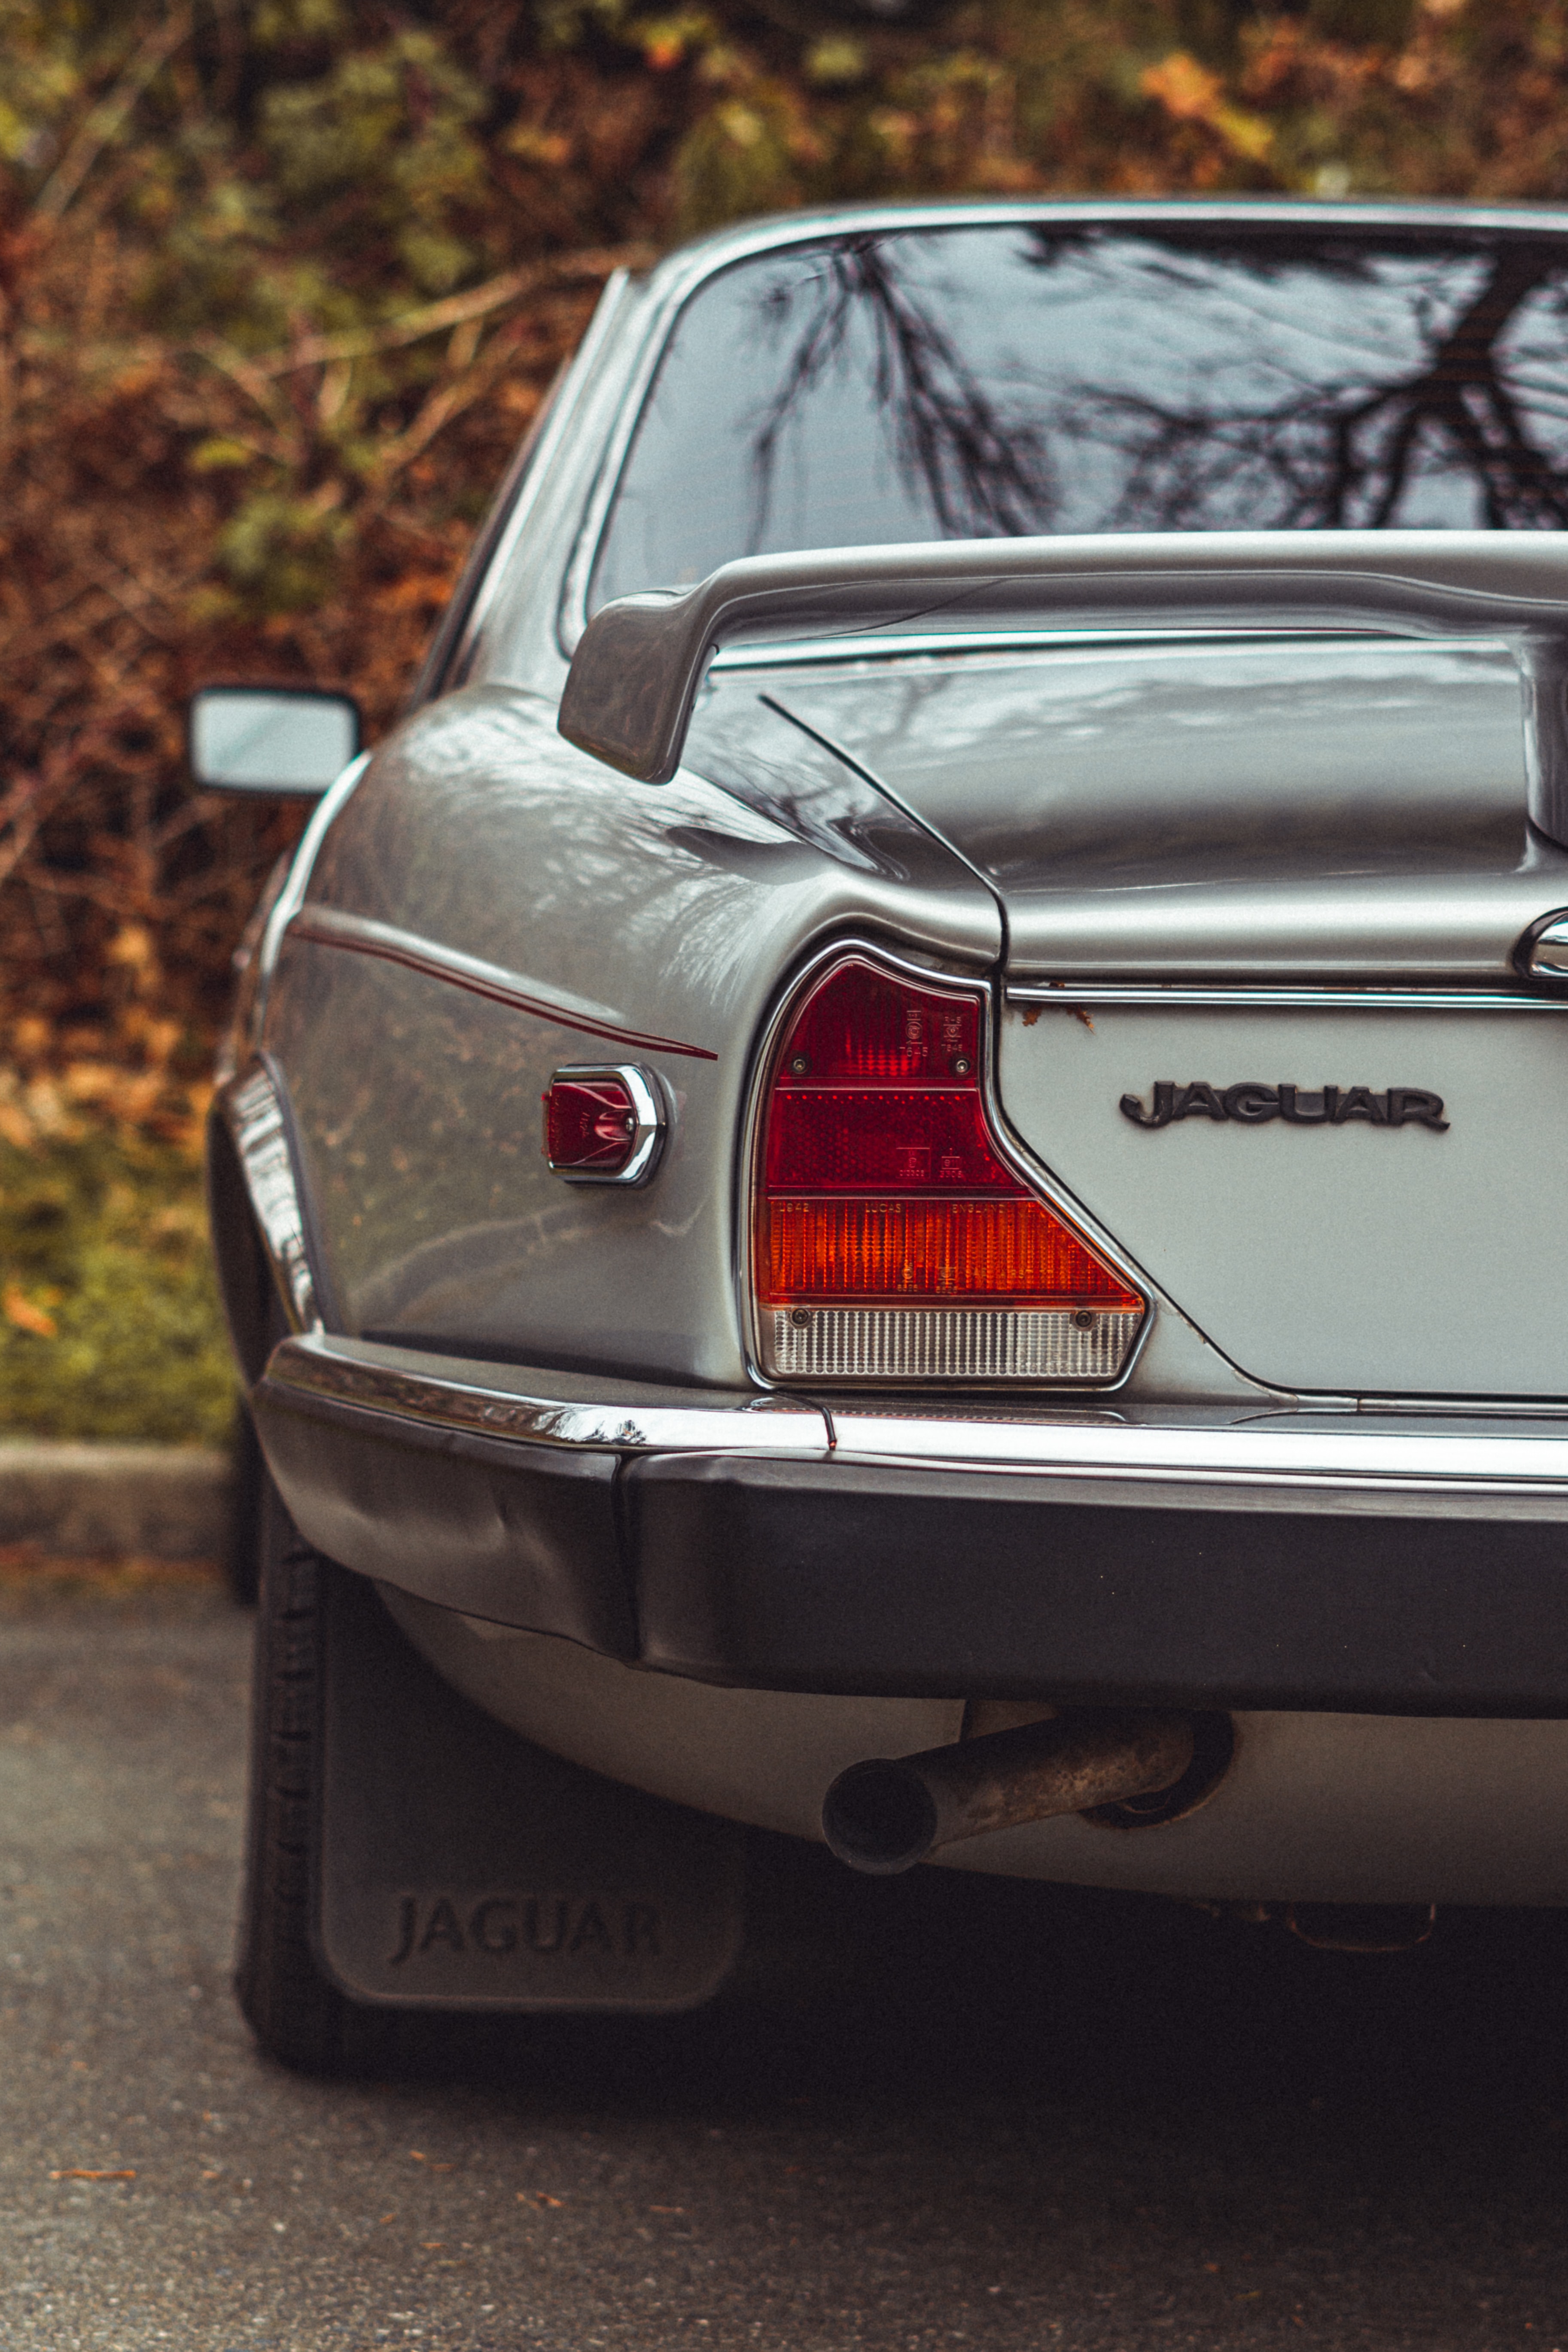 jaguar, cars, car, machine, vintage, back view, rear view, retro